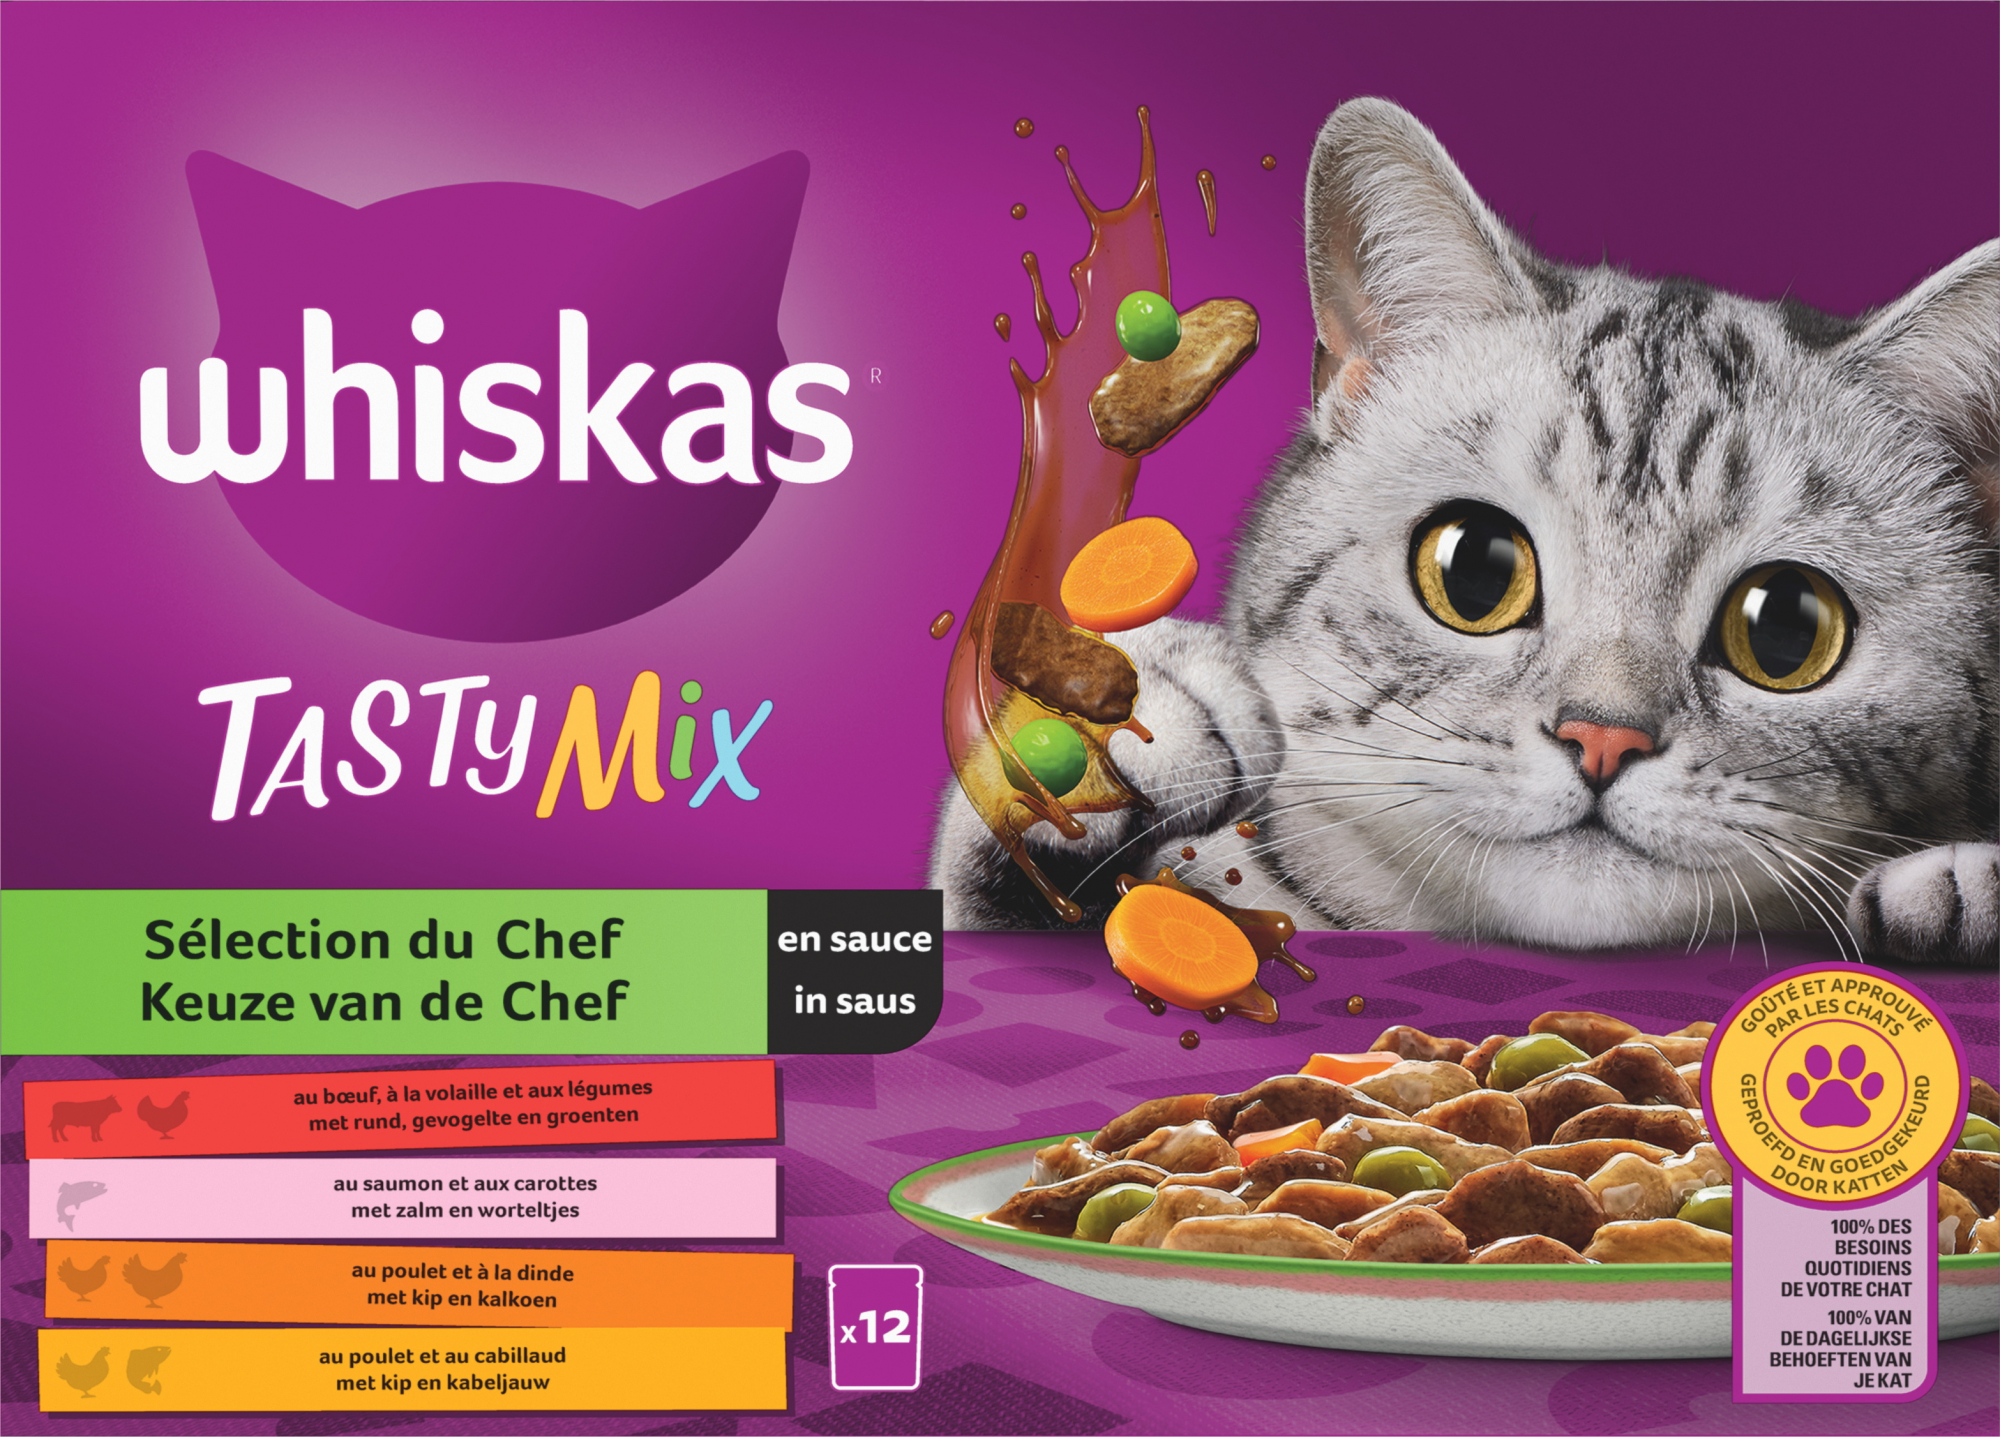 WHISKAS Tasty Mix Saquetas de frescura Sélection du Chef em molho para gato adulto 4 variedades